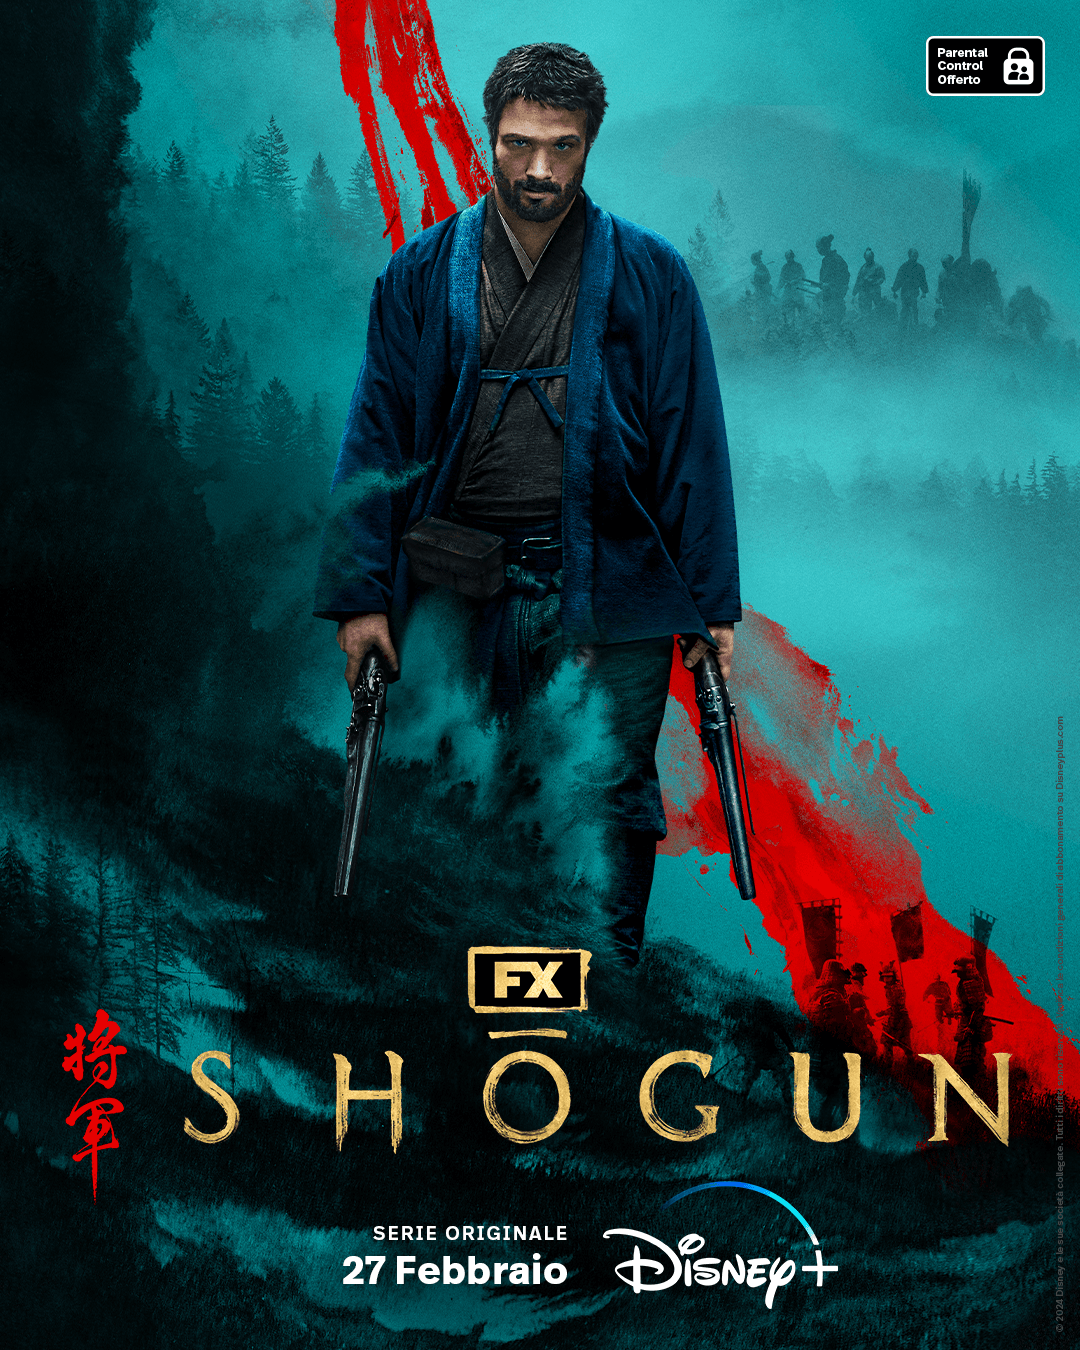 Il poster di Shōgun con Cosmo Jarvis. Crediti: Disney+/FX.